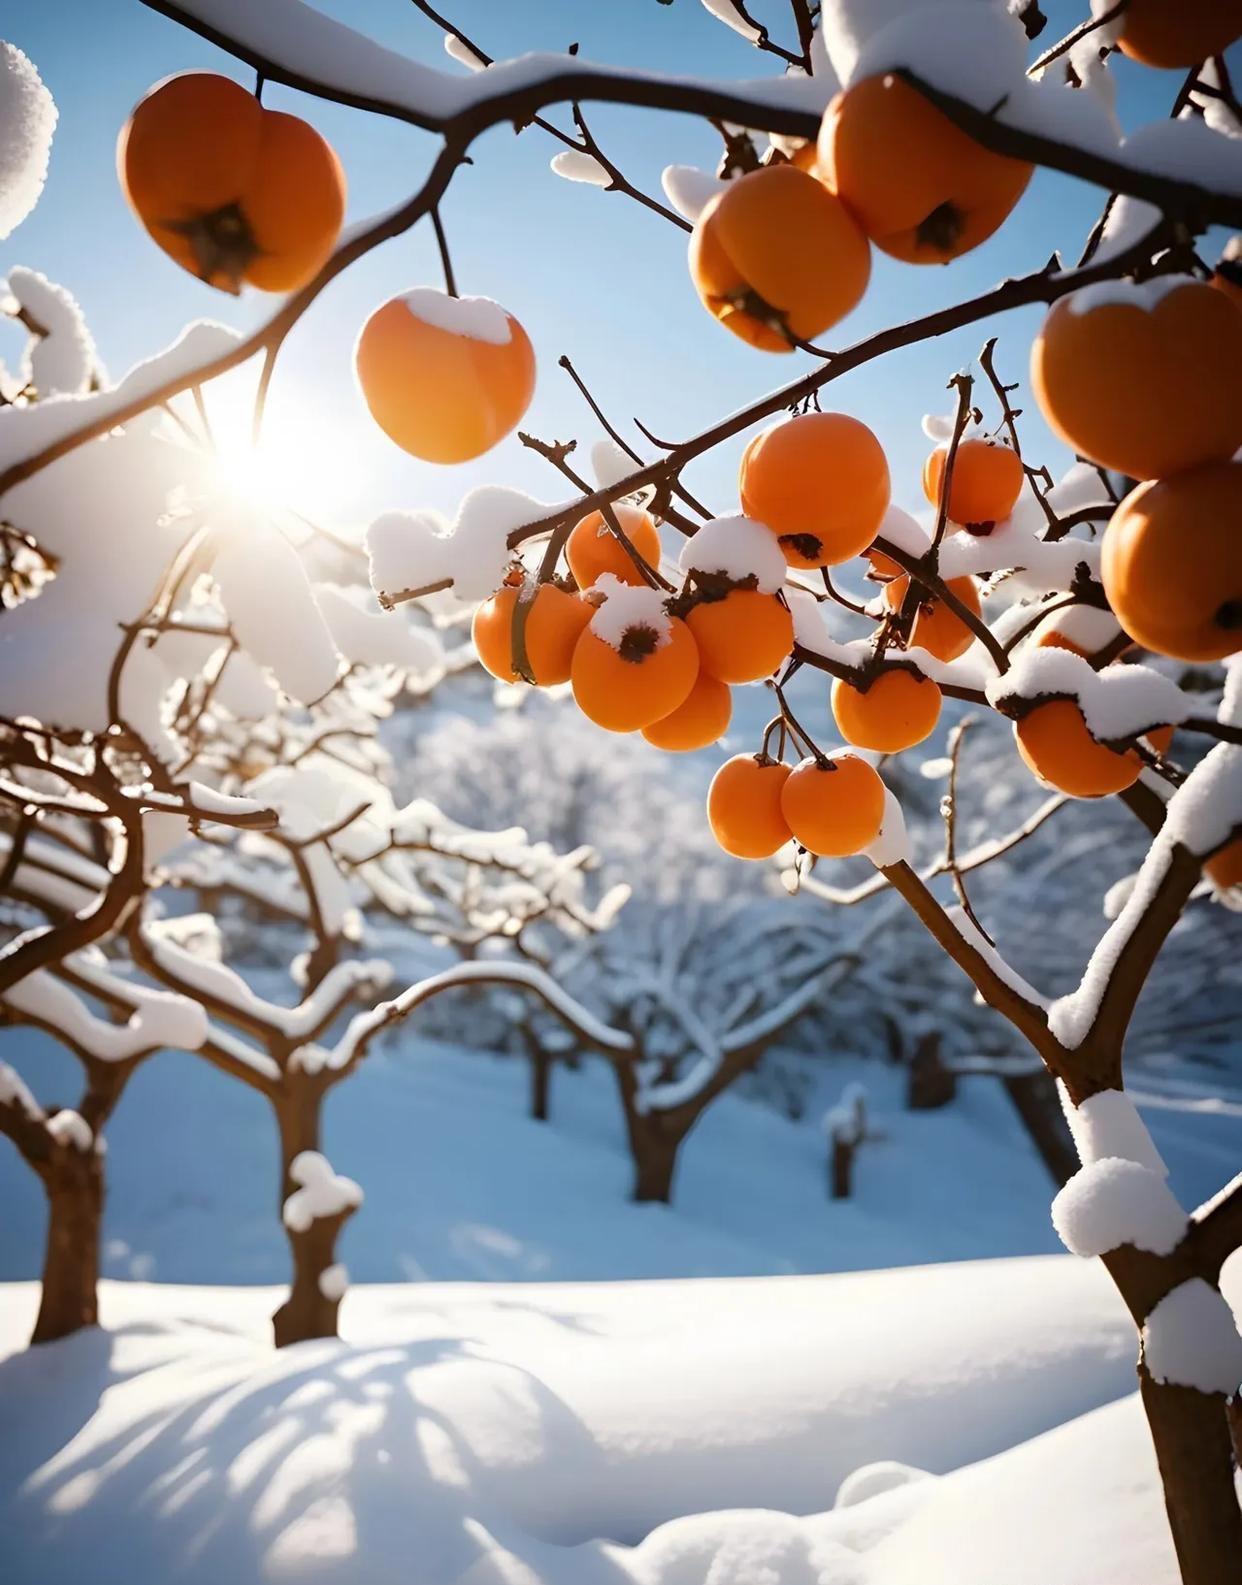 雪中的柿子树图片大全图片